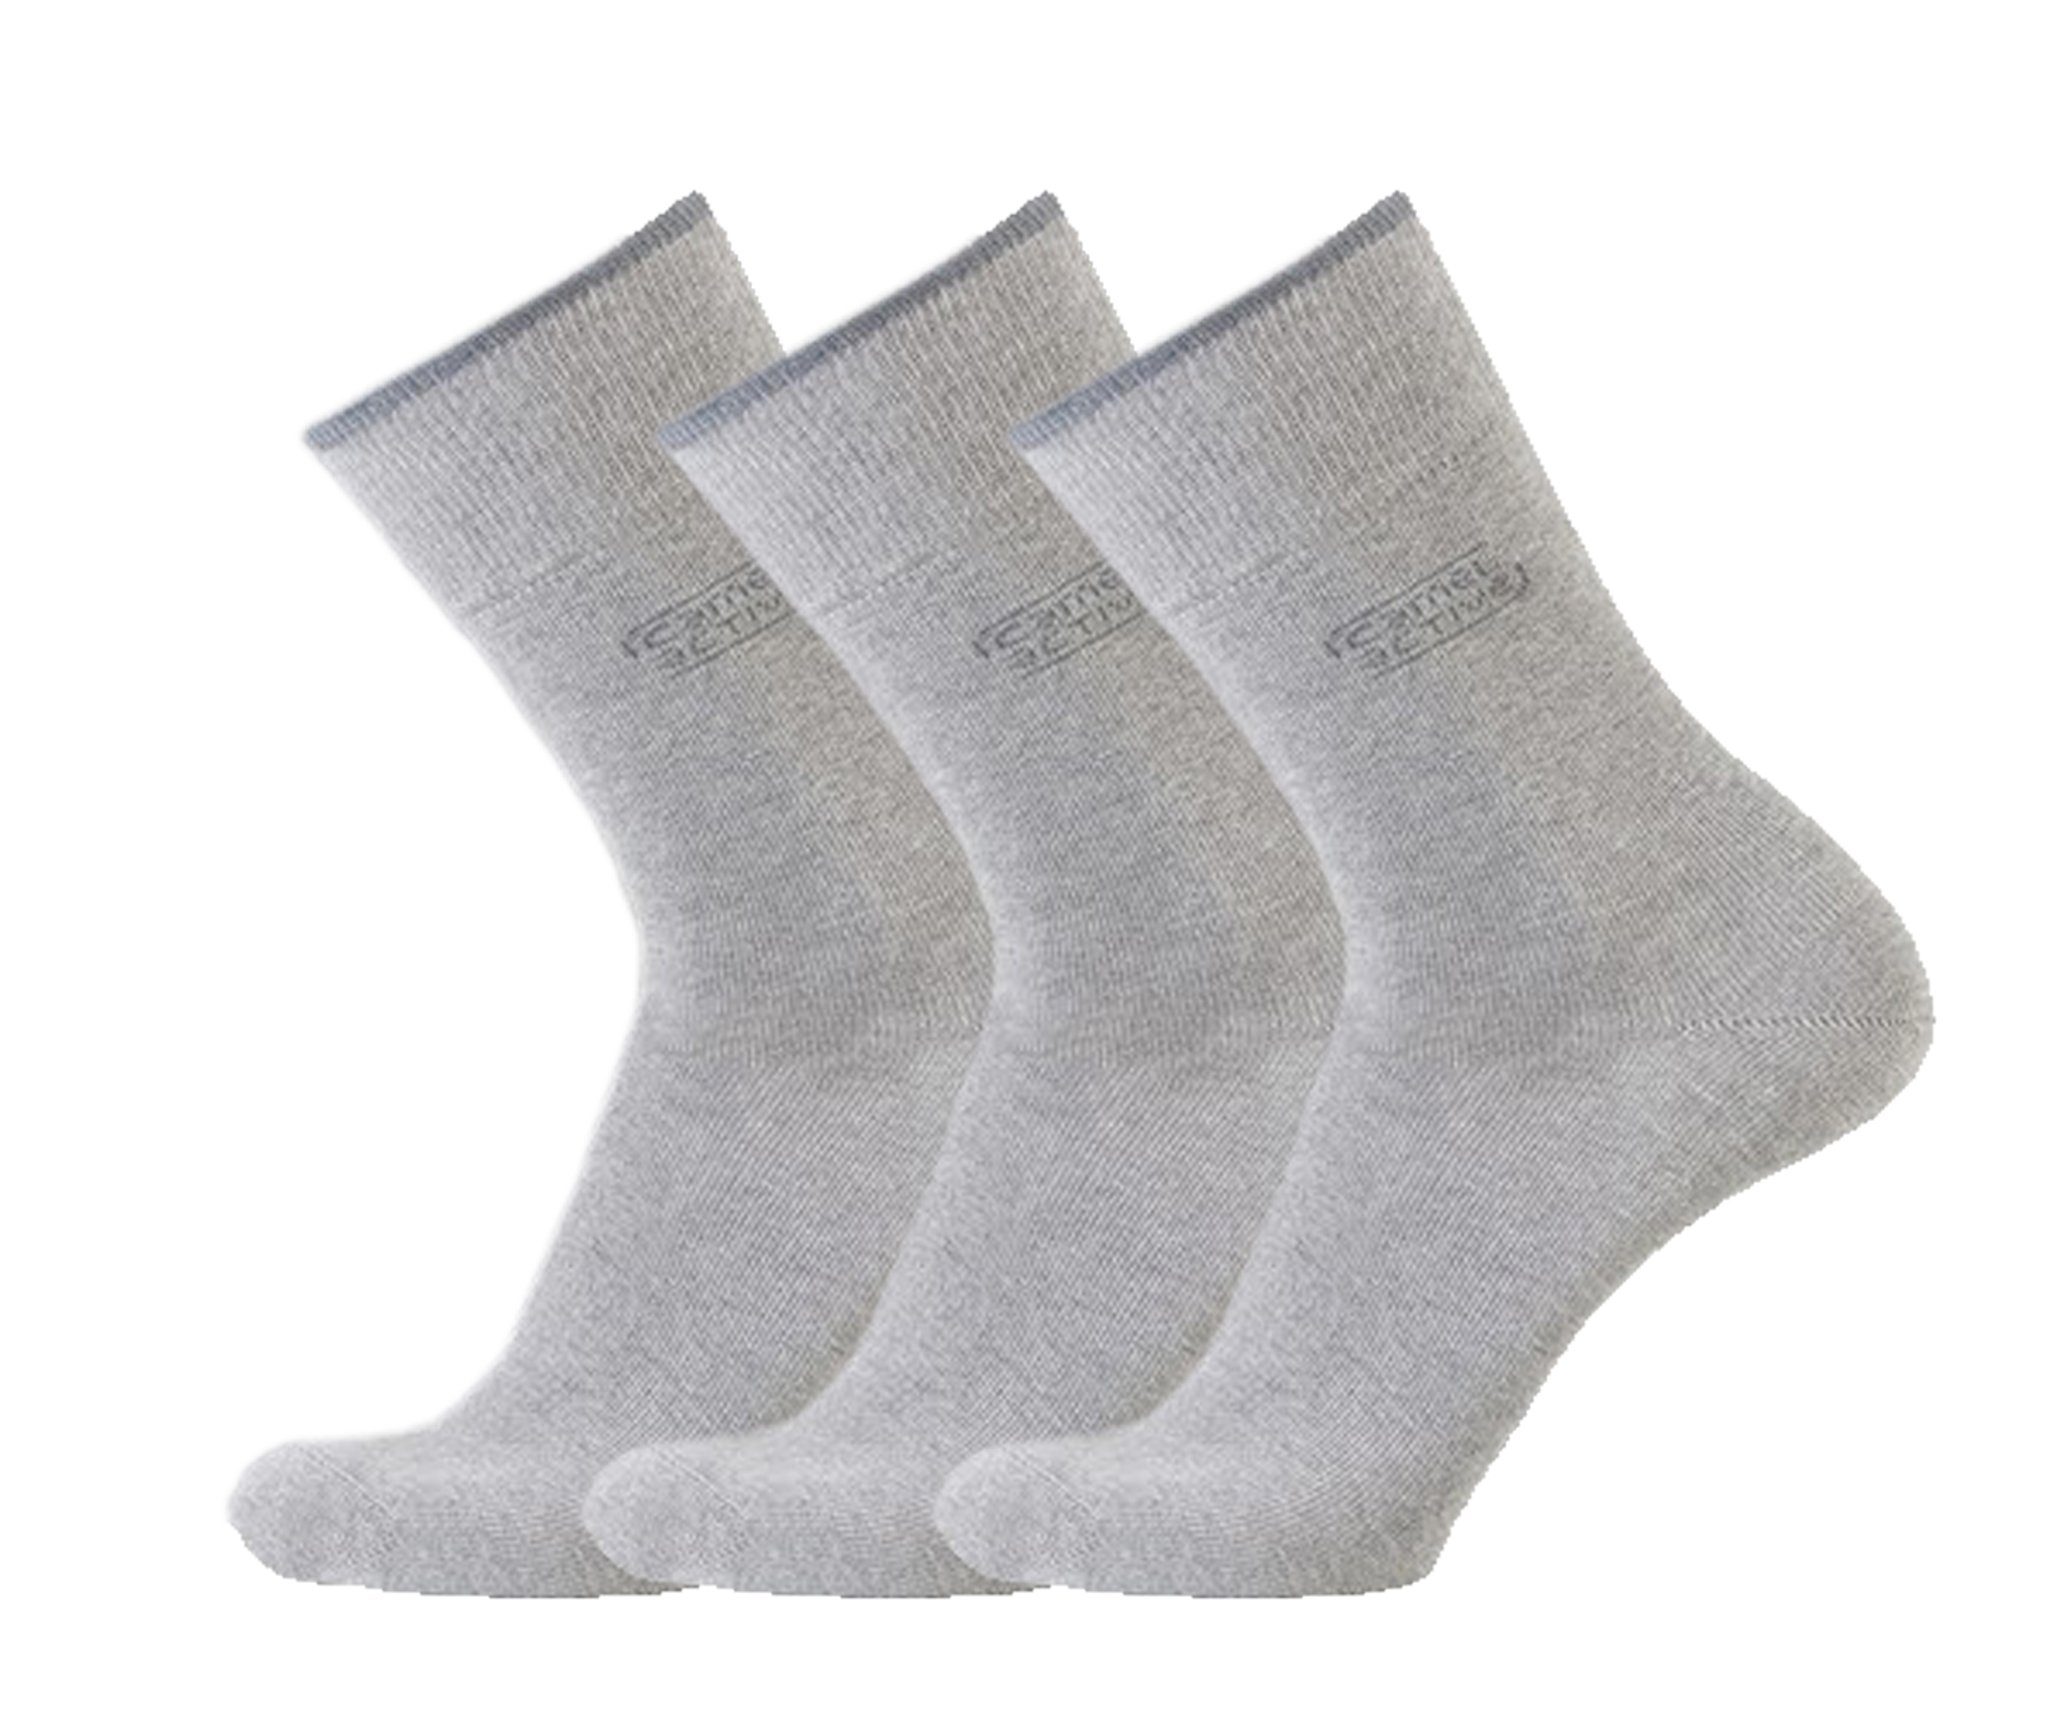 camel active Kurzsocken Herren Socken, Zehennaht Basic - 3er Baumwollanteil - Super Qualität - Pack Socken, hoher flache